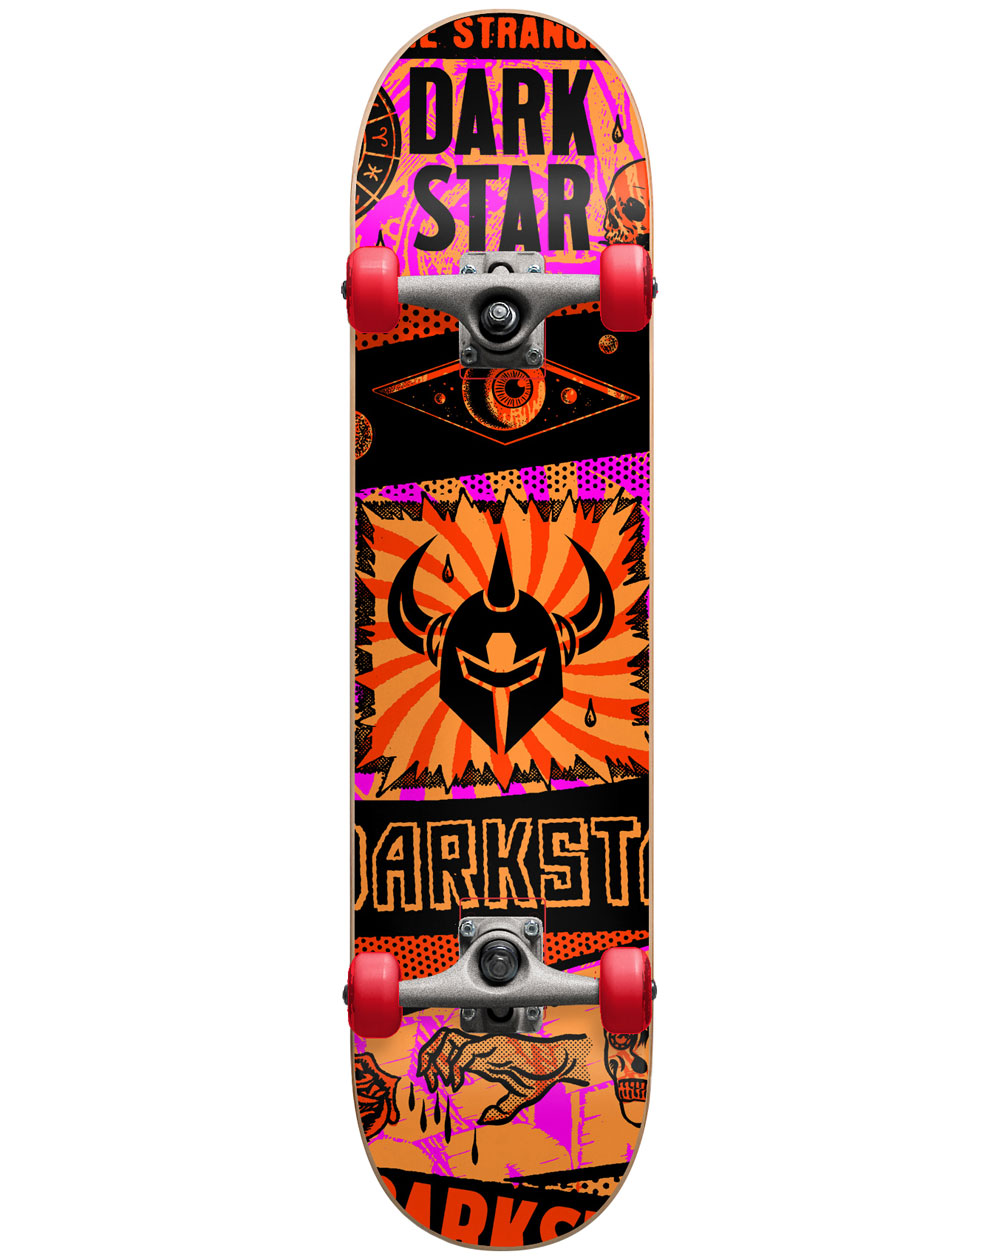 Darkstar Skateboard Complète Collapse 7.875" Orange